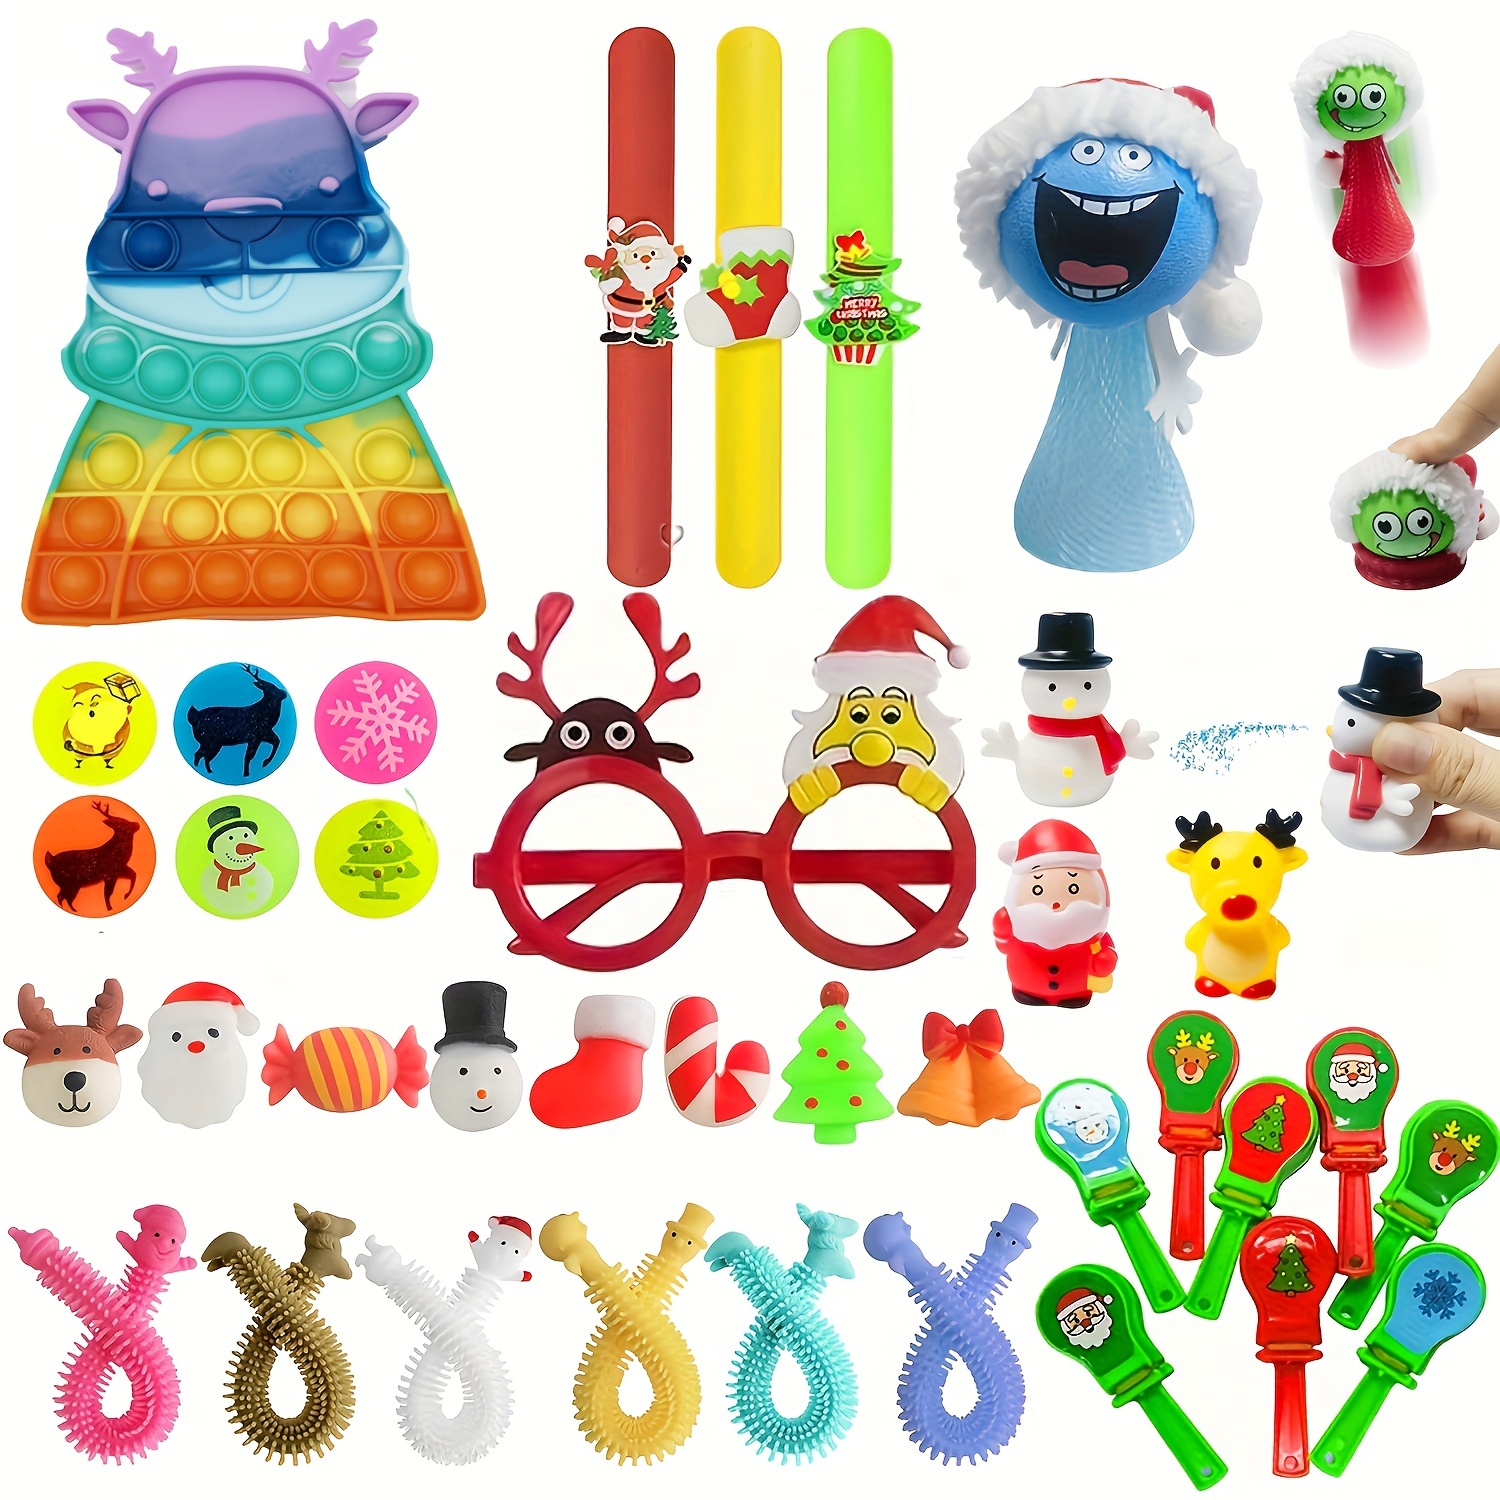 relleno piñatas de cumpleaños infantil,juguetes para piñatas  infantiles,juguetes piñatas de cumpleaños,regalos para fiestas  infantiles,juegos para